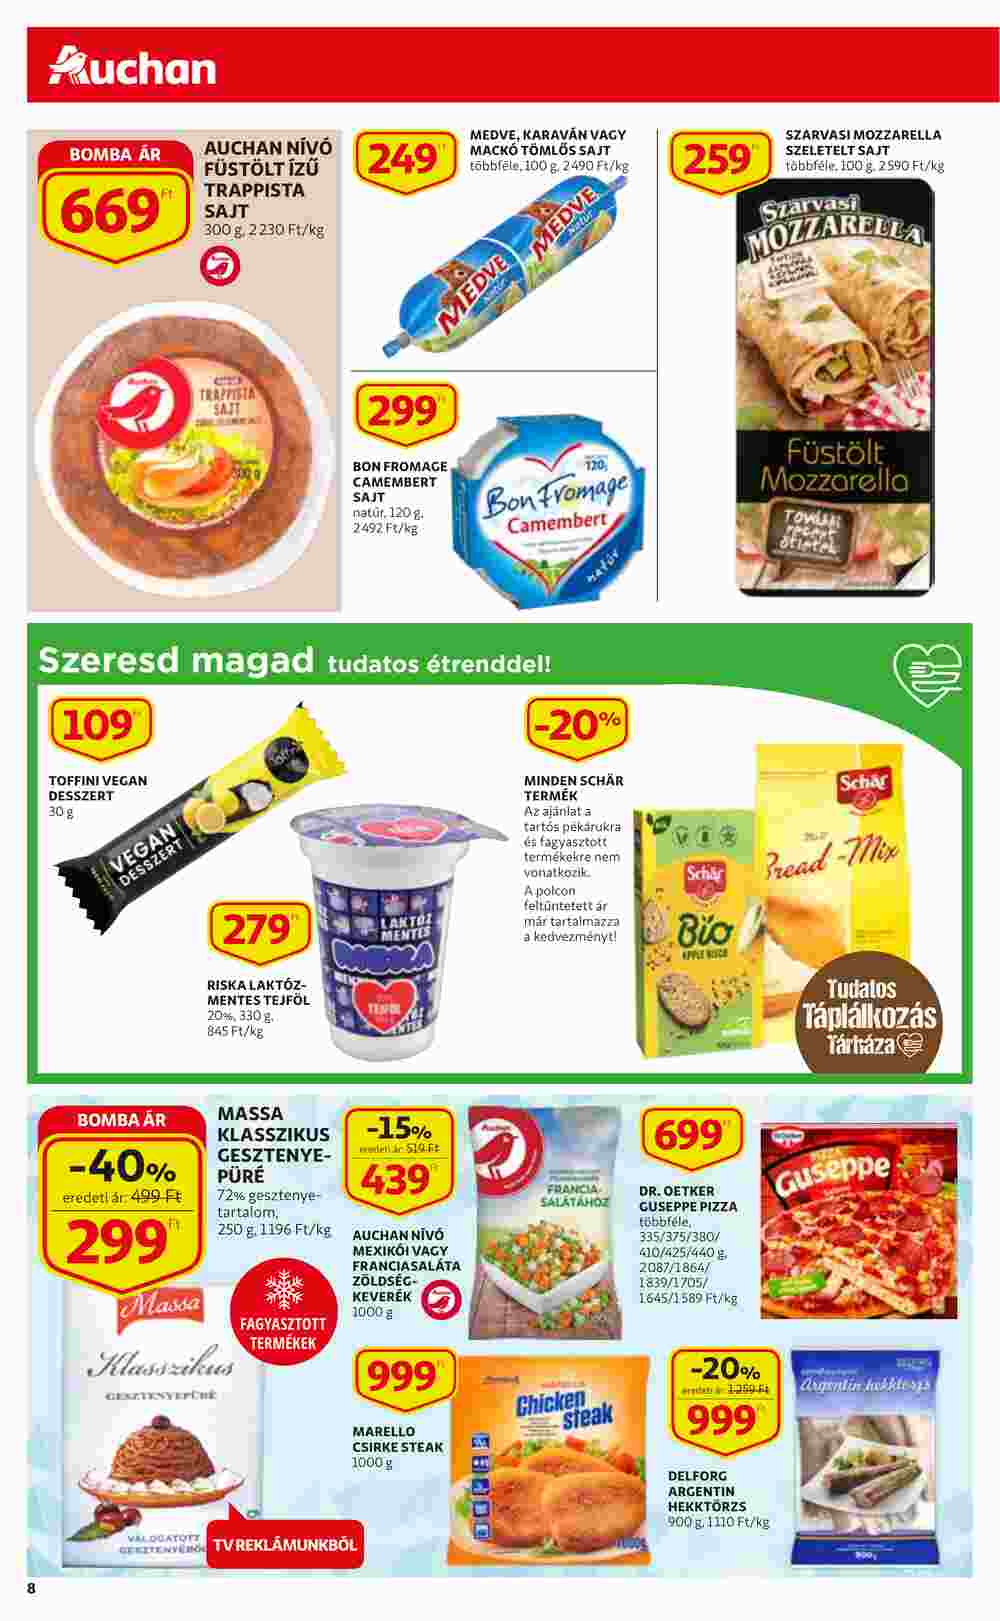 Auchan akciós újság 2021.11.25-től - 8. oldal.